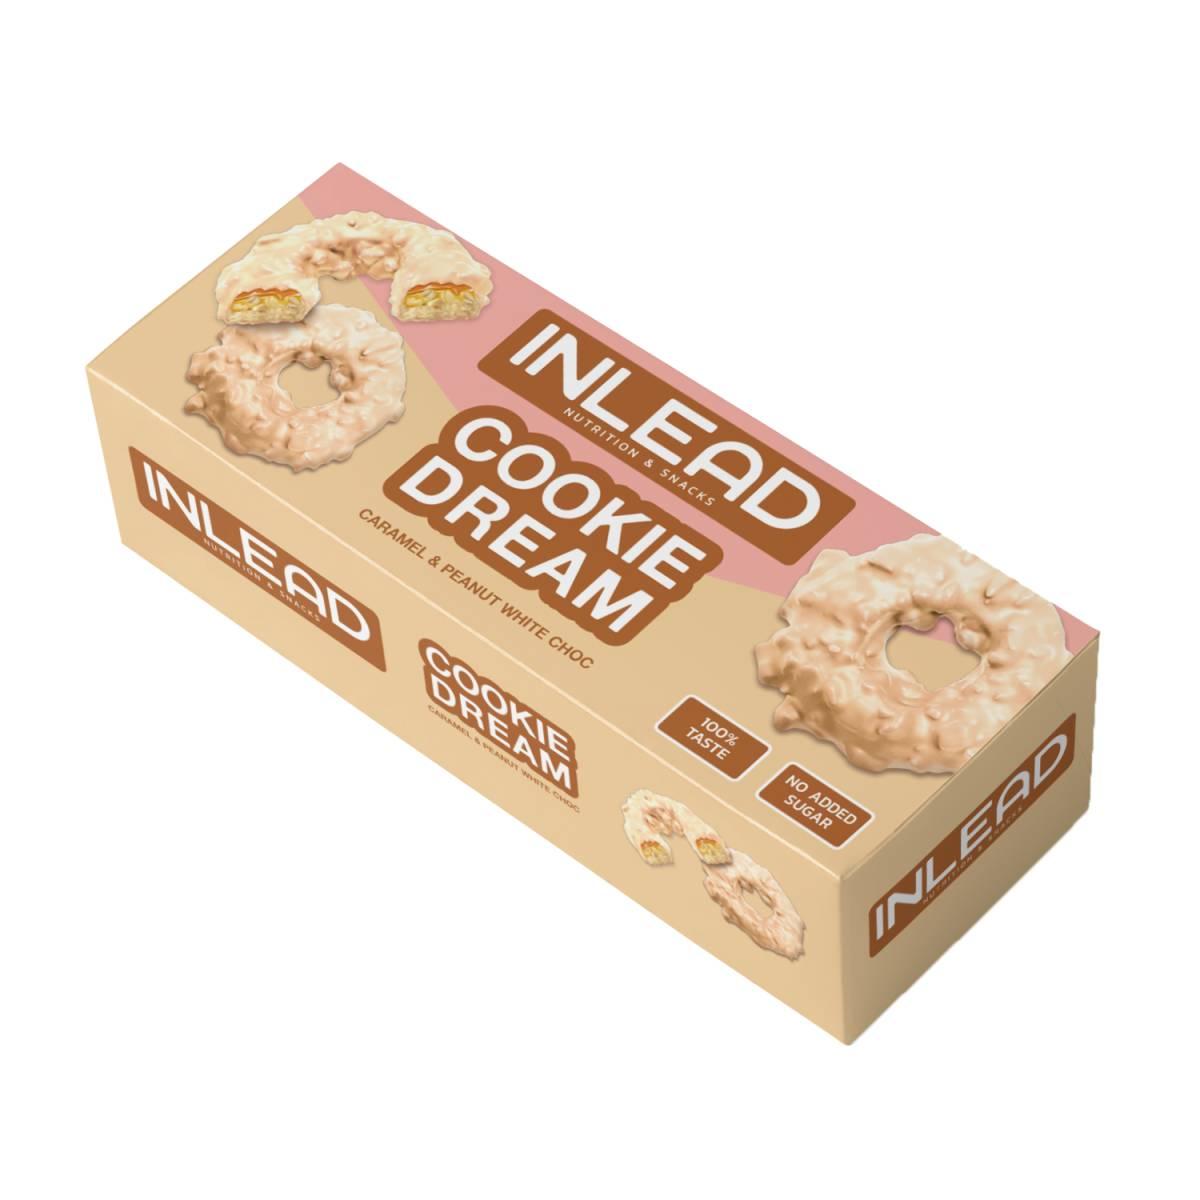 Cookie Dream zuckerarme Kekse 125g Packung von Inlead